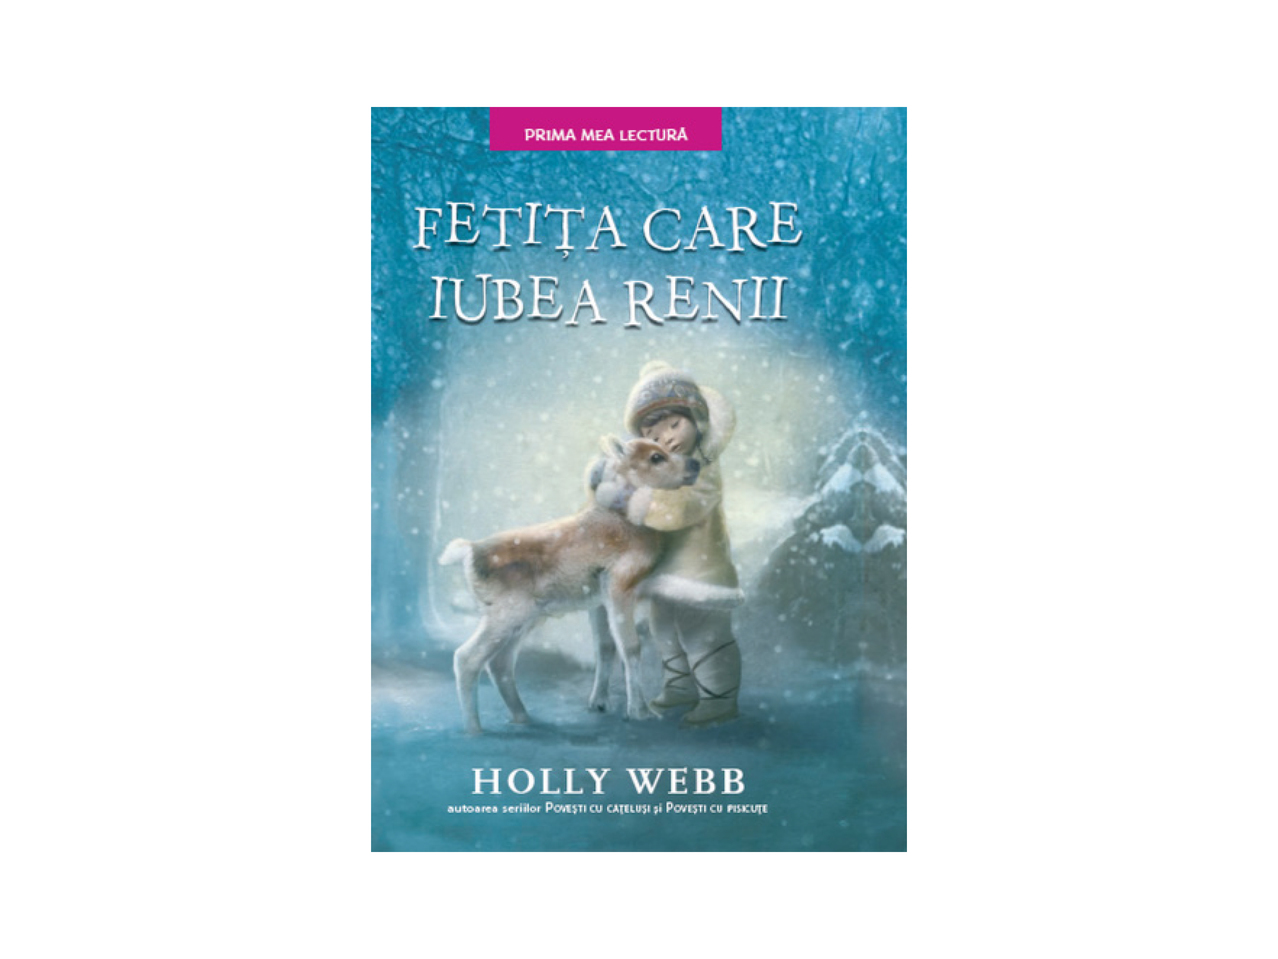 Povești de iarnă "Holly Webb"